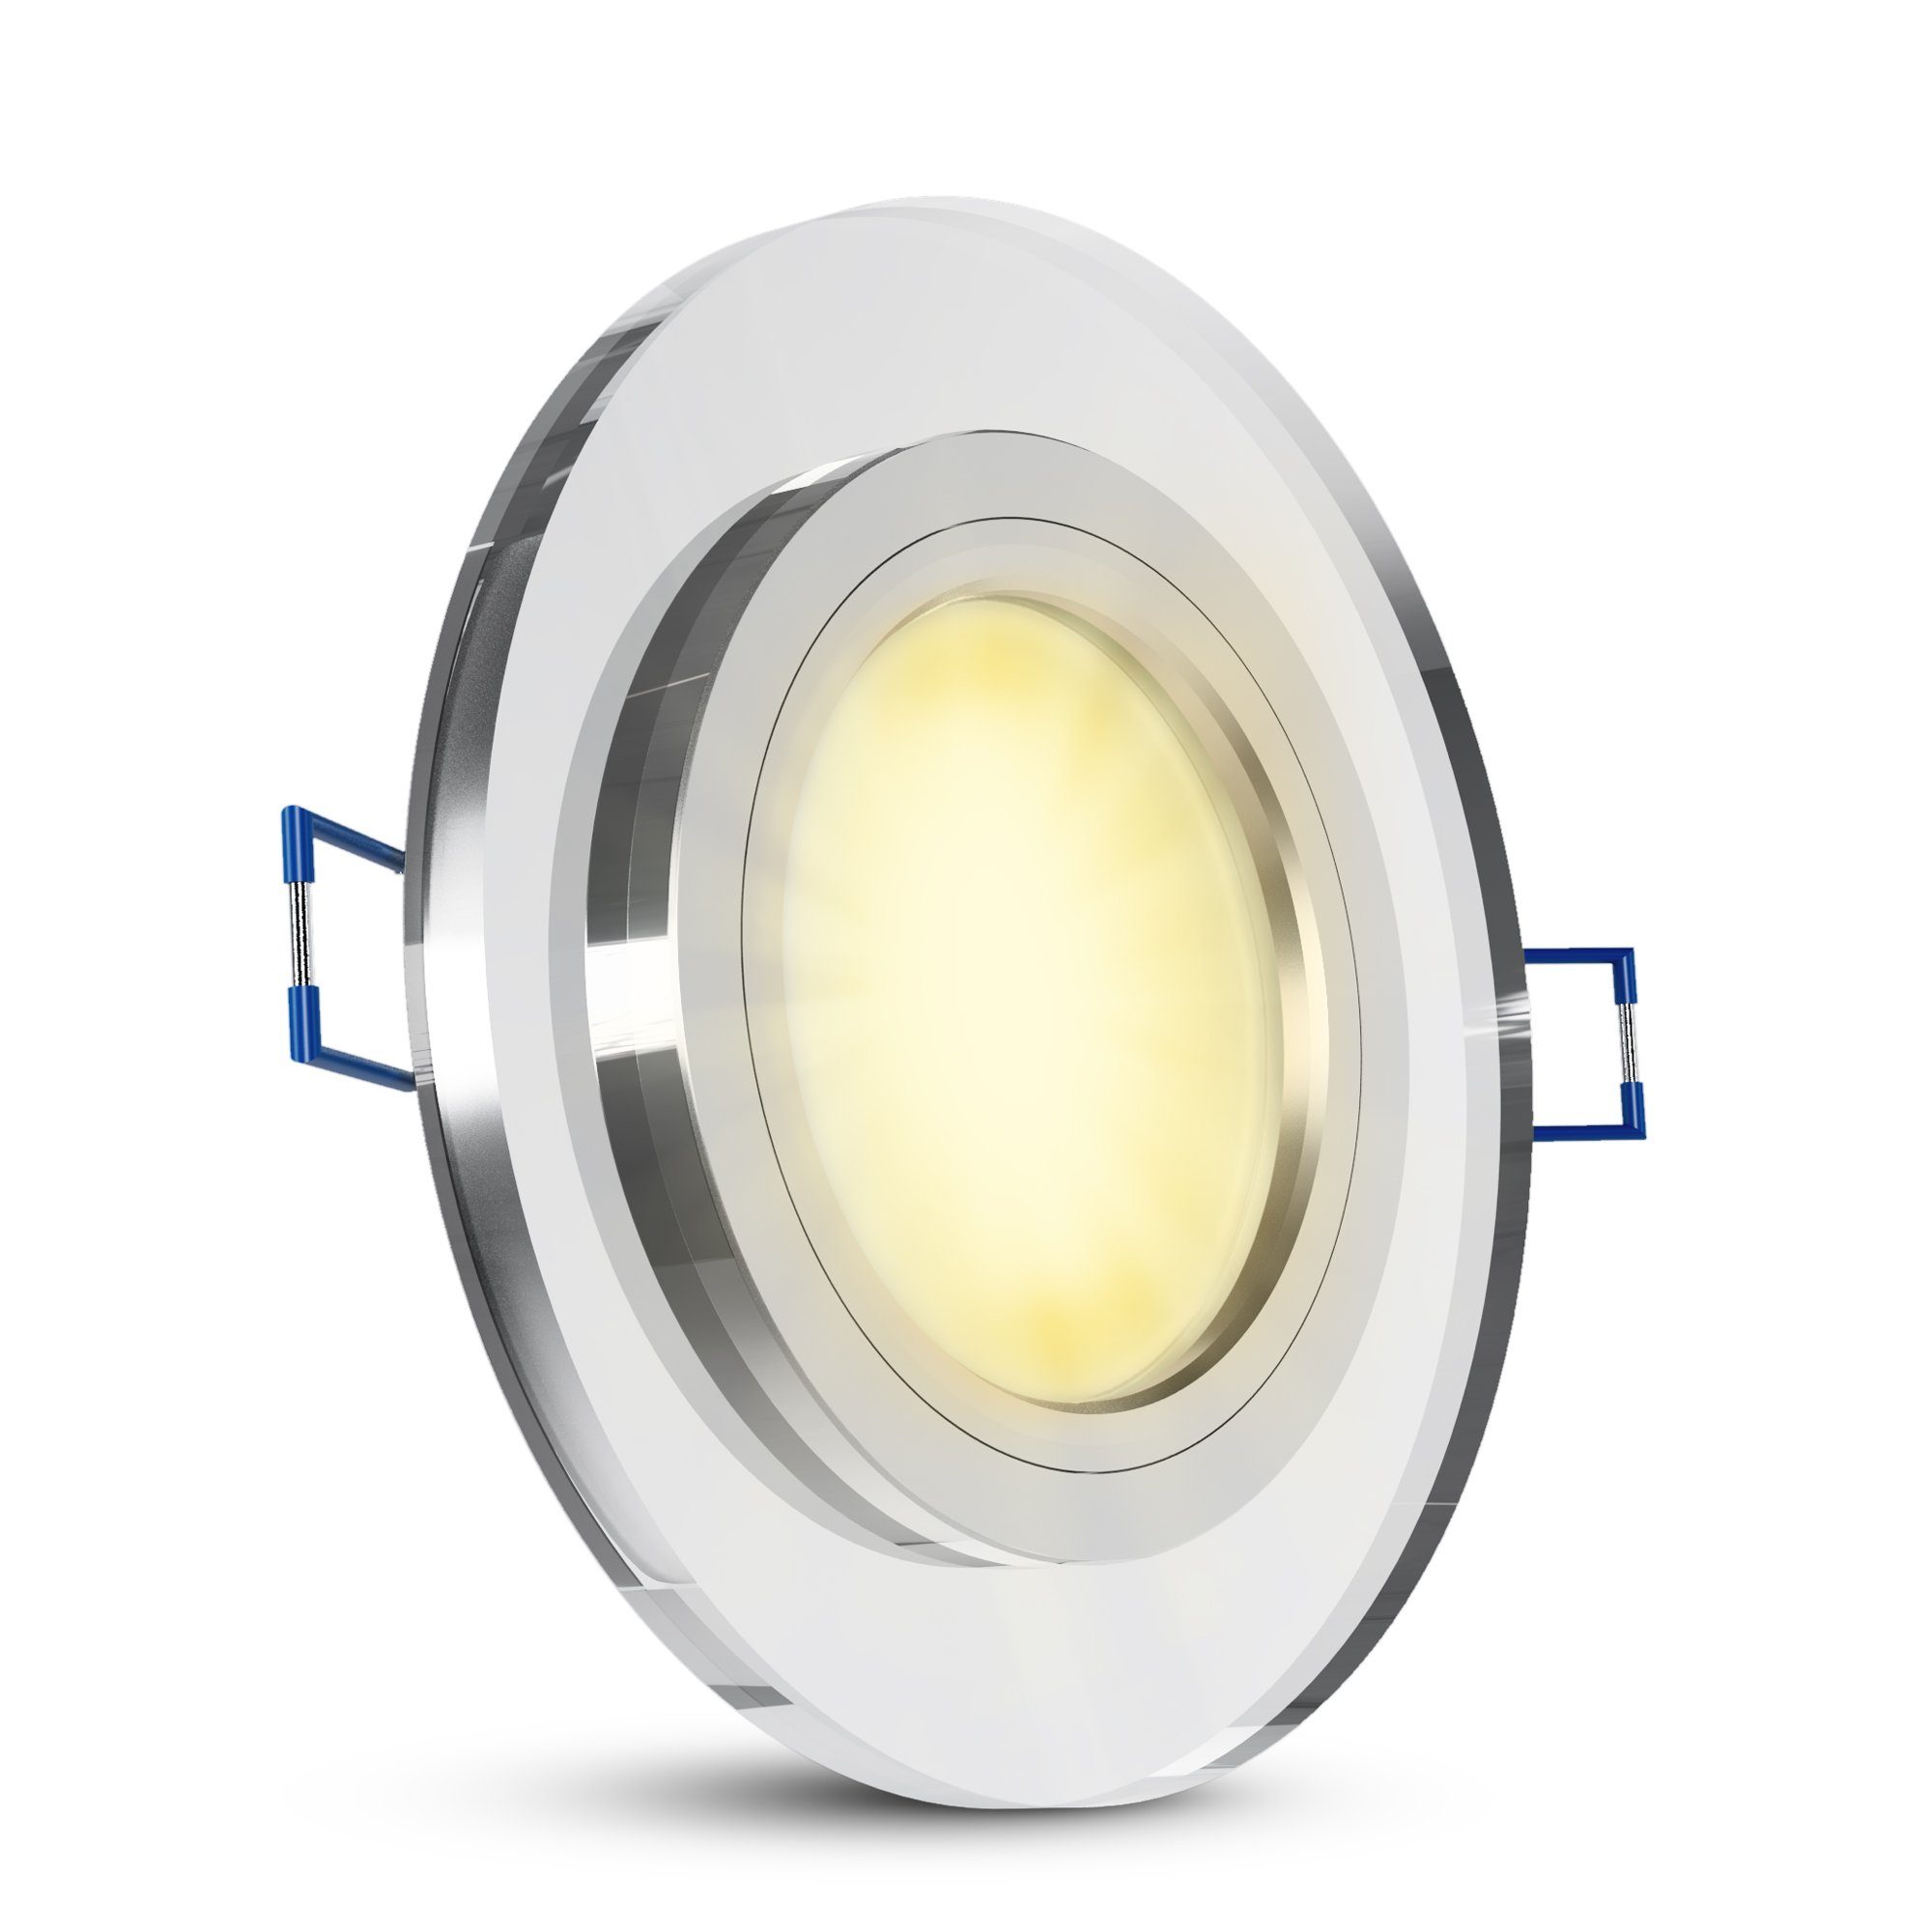 SSC-LUXon LED Einbaustrahler LED-Einbauspot Echtglas flach, rund, klar spiegelnd, fourSTEP Dim LED, Warmweiß